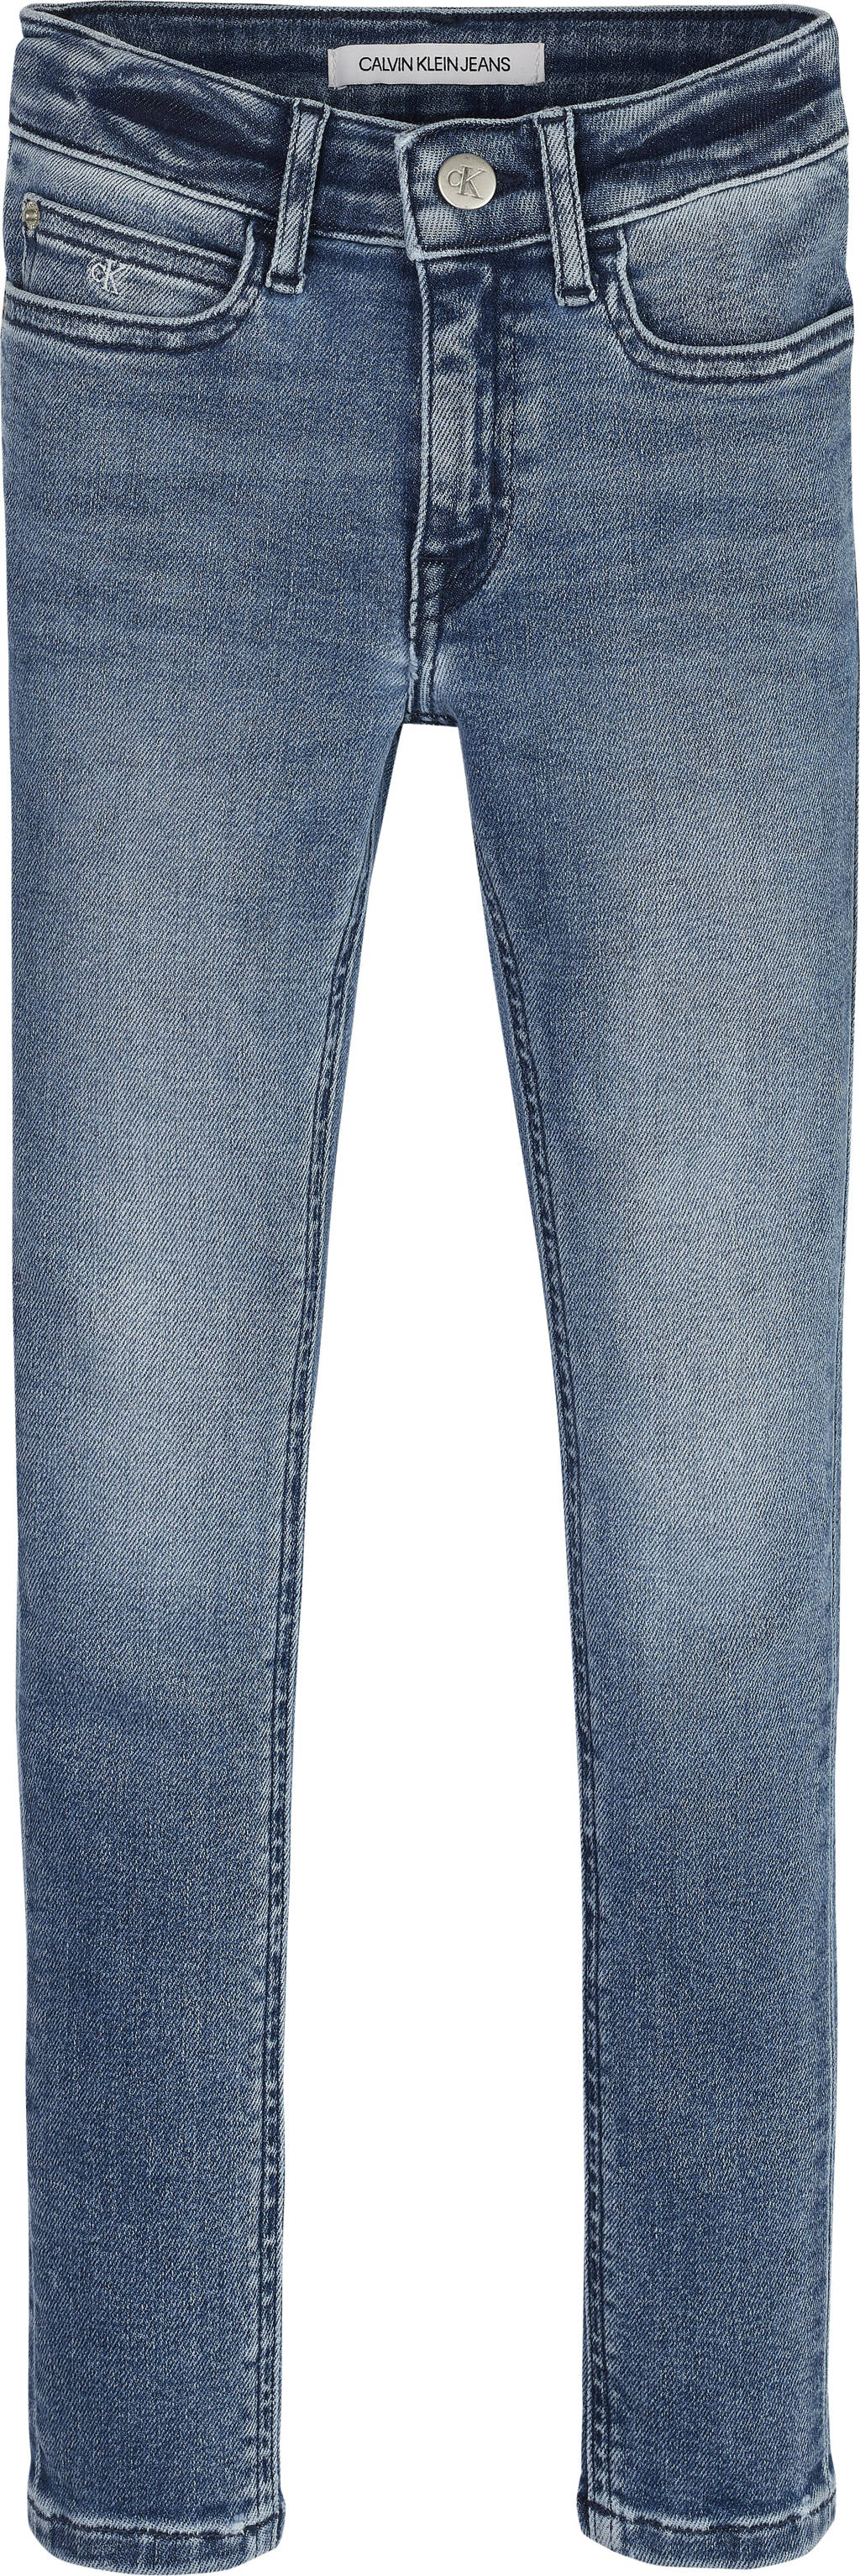 Stonewashed meisjes CALVIN KLEIN JEANS skinny jeans van stretchdenim met regular waist en rits- en knoopsluiting